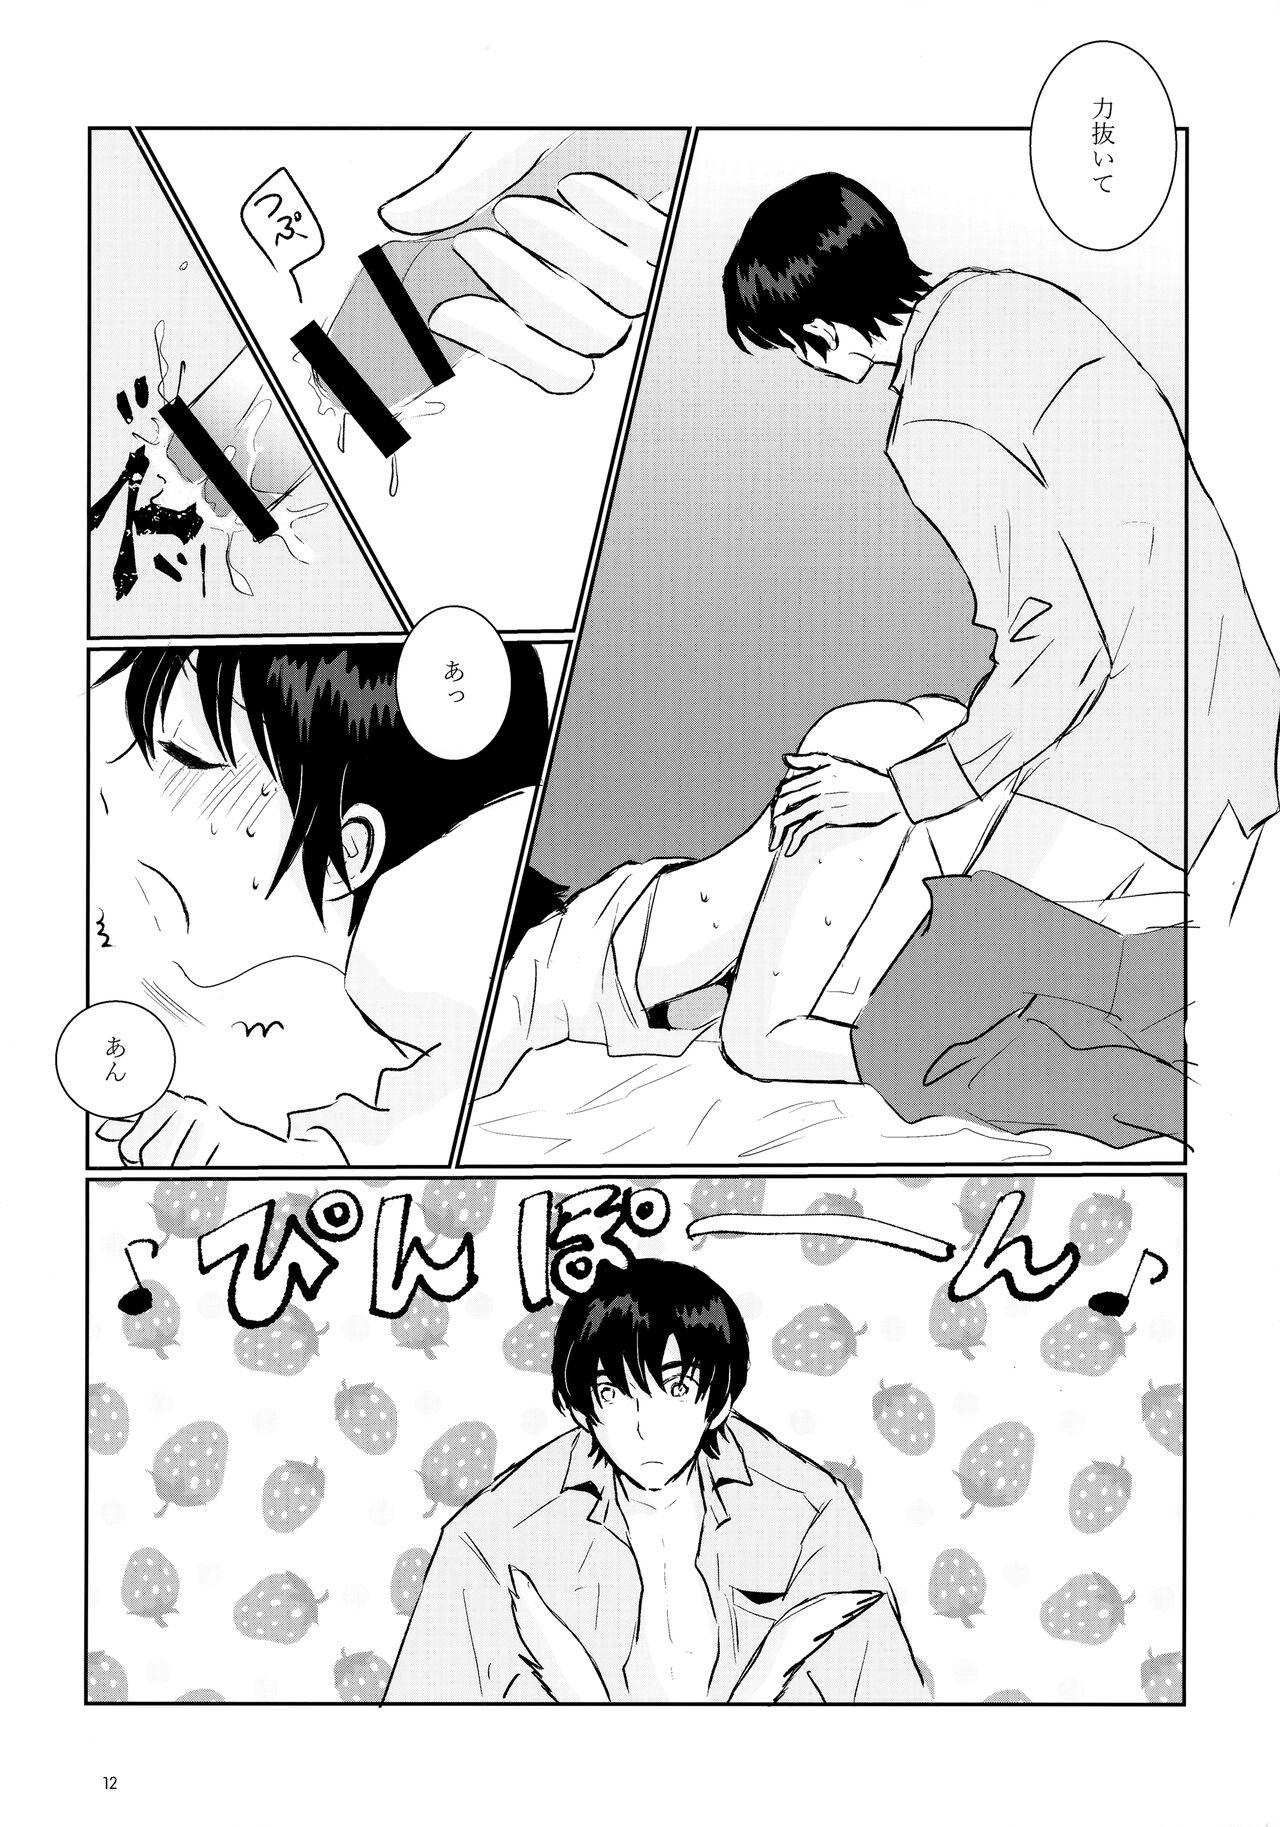 Piercing Usagi no Shippo - Boku dake ga inai machi | erased Kissing - Page 12